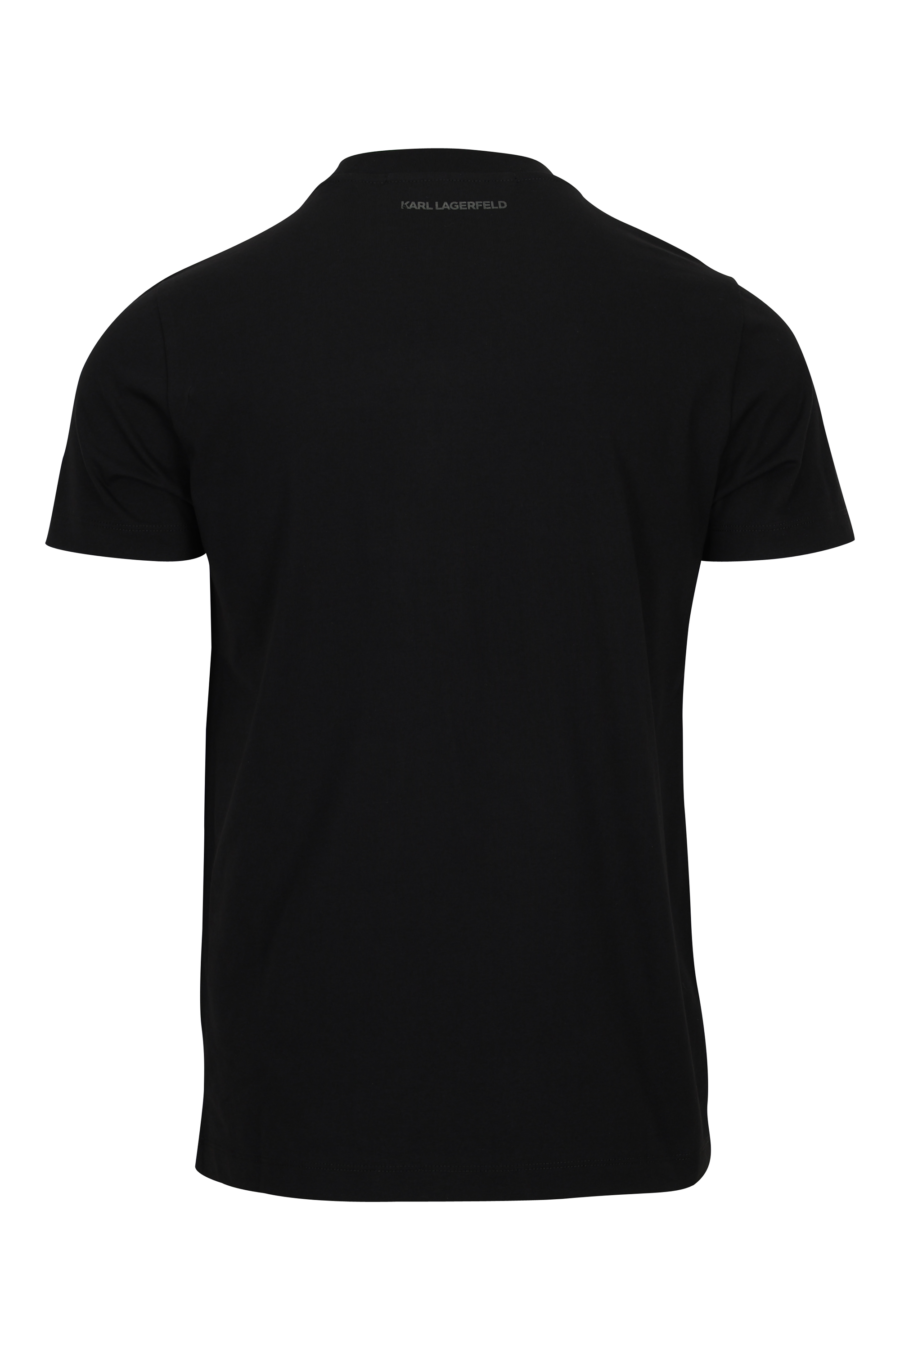 Camiseta negra con maxilogo "karl" en degradé - 4062226967136 1